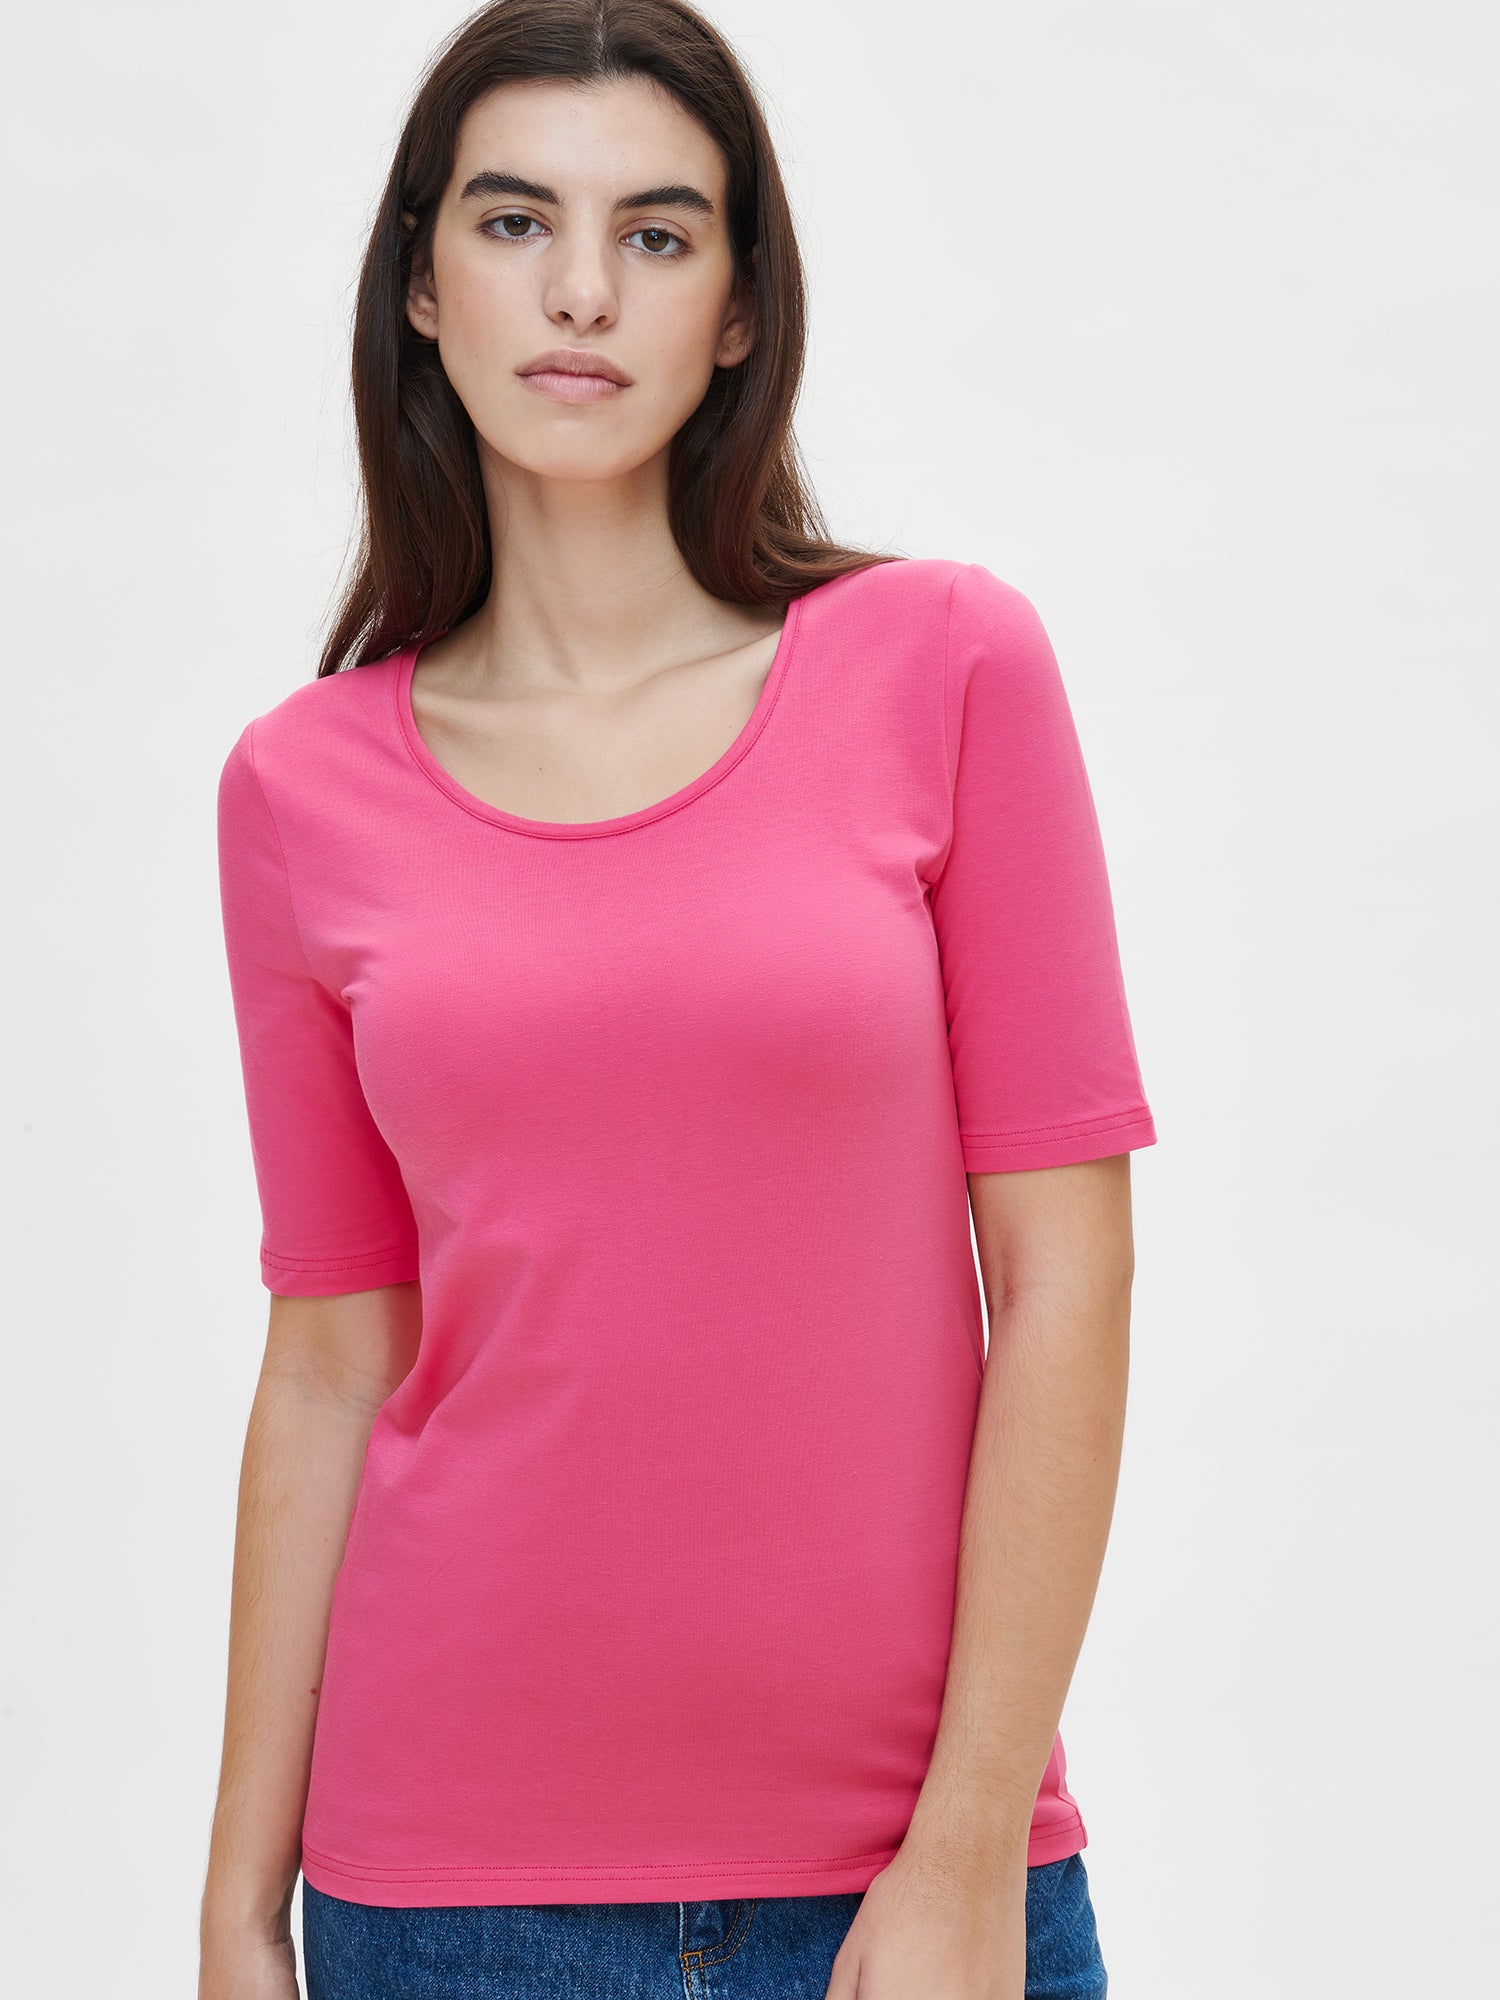 Nanson naisten klassisen tyylikäs pinkki Basic t-paita pyöreällä pääntiellä.